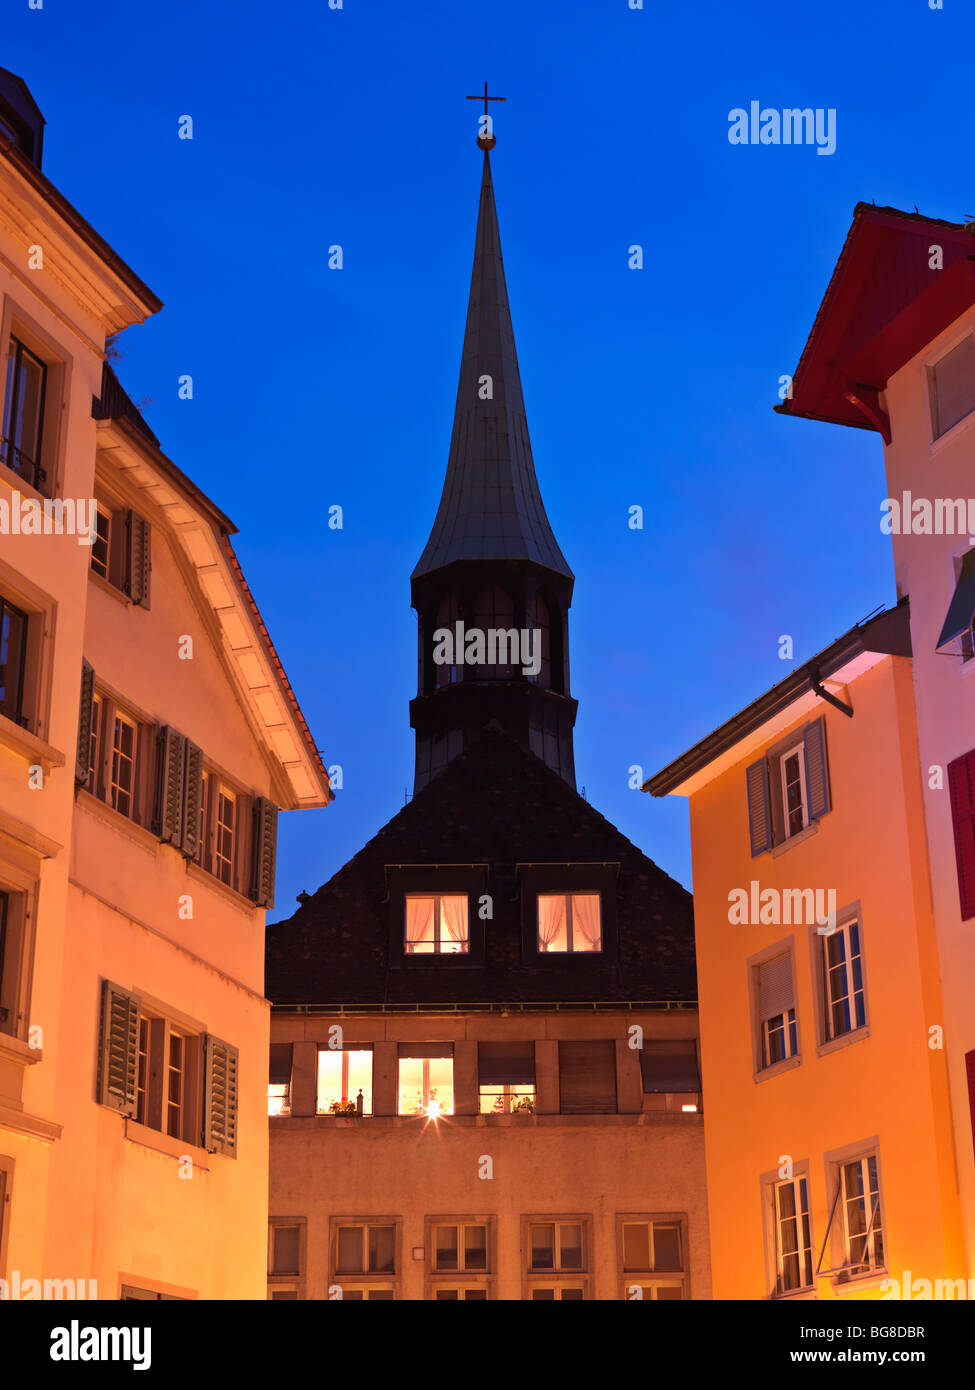 Suisse, Zurich, la vieille ville de Zurich Église Augustiner au crépuscule Banque D'Images